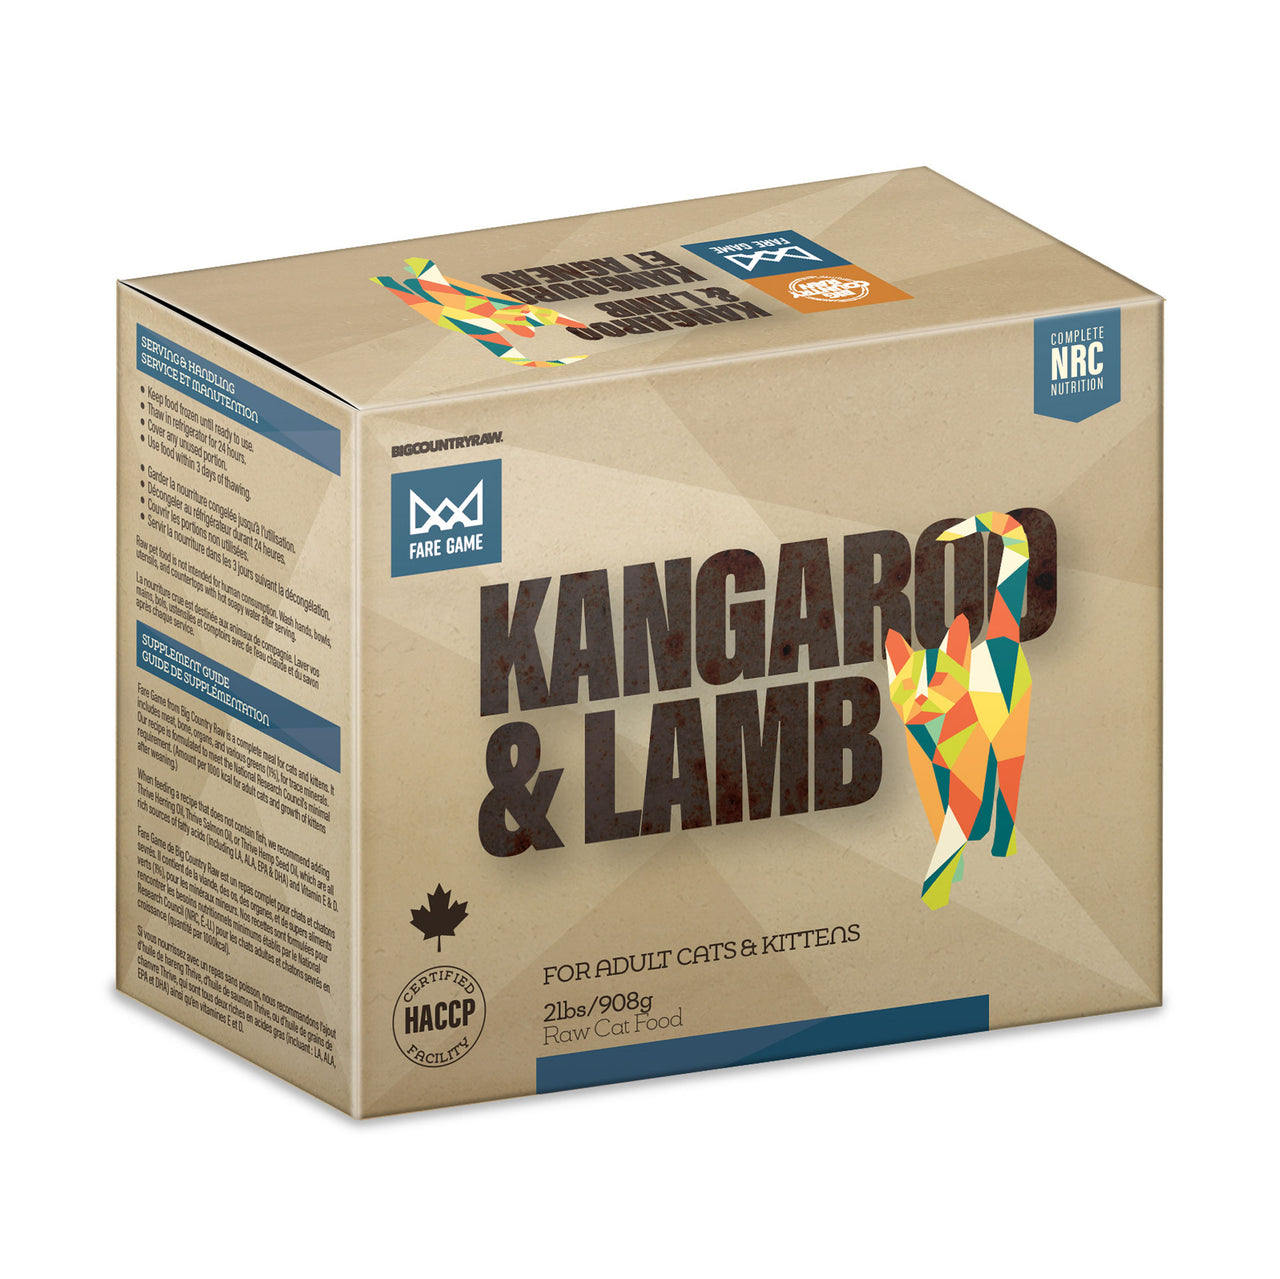 Big Country Raw Kangaroo & Lamb Fare Game